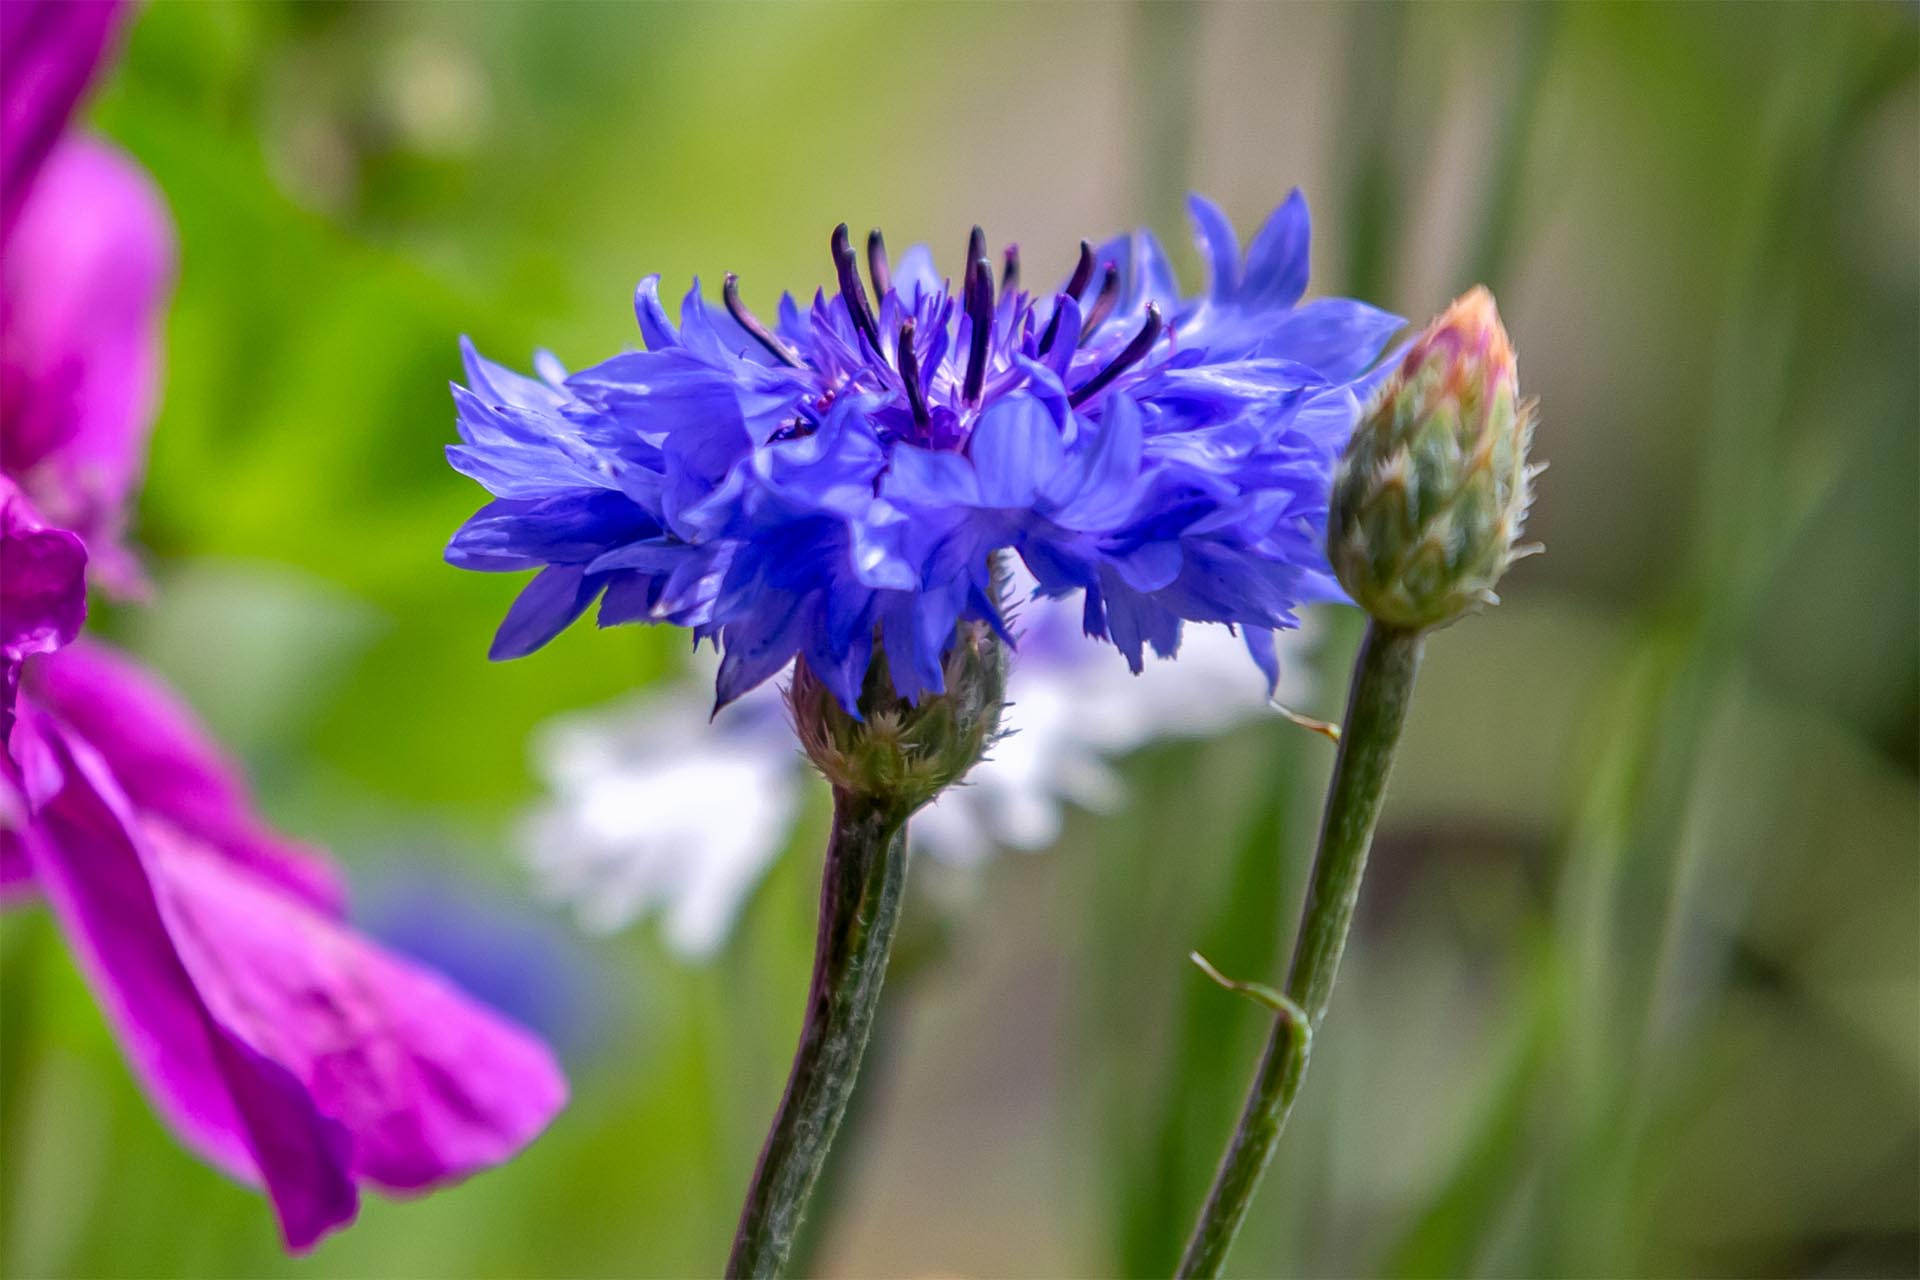 Eine blaublühende Kornblume in einem Familiengarten in Dübendorf, Zürich. Die Kornblume gilt gemäss InfoFlora / Rote Liste als potenziell gefährdet. Sie steht aber in der Schweiz nicht unter Naturschutz. Foto 2021 Dirk Rahnenführer